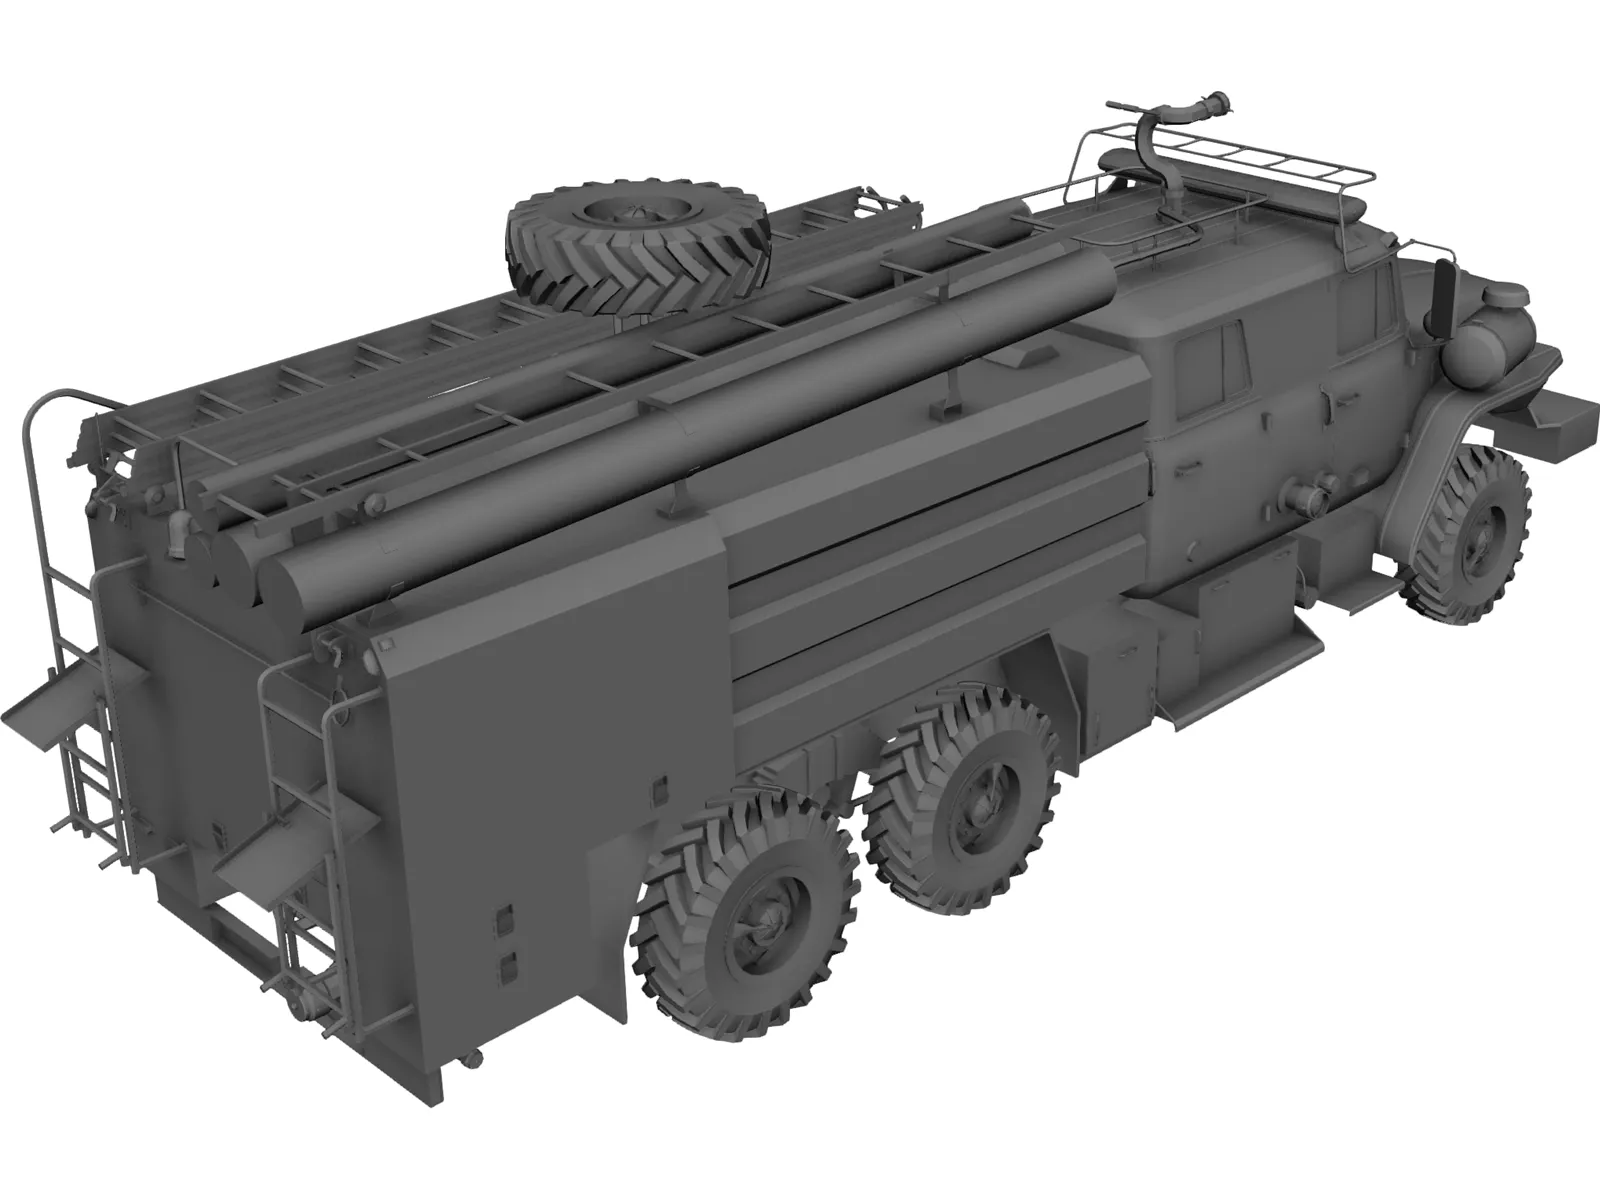 Ural 5557 Fire Truck 3D Model